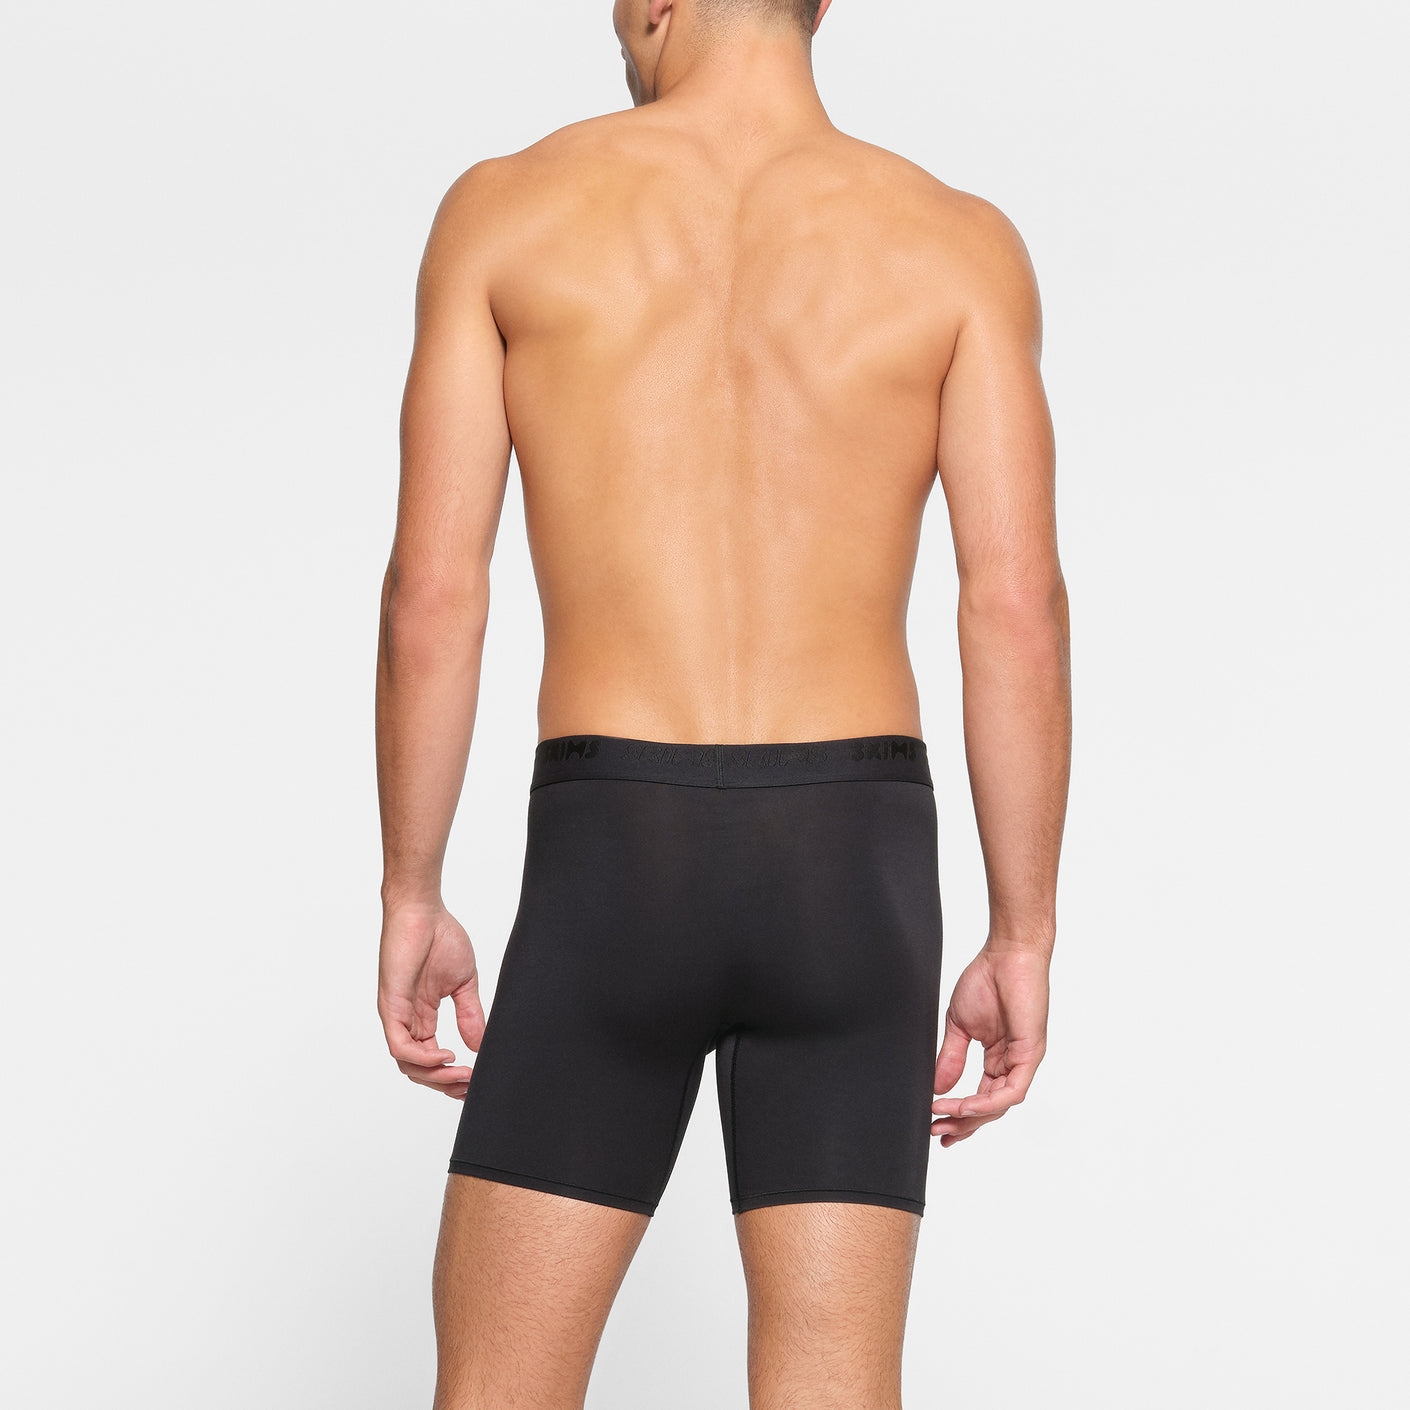 Men's Stretch Jersey Front Open Brief, Men's Underwear